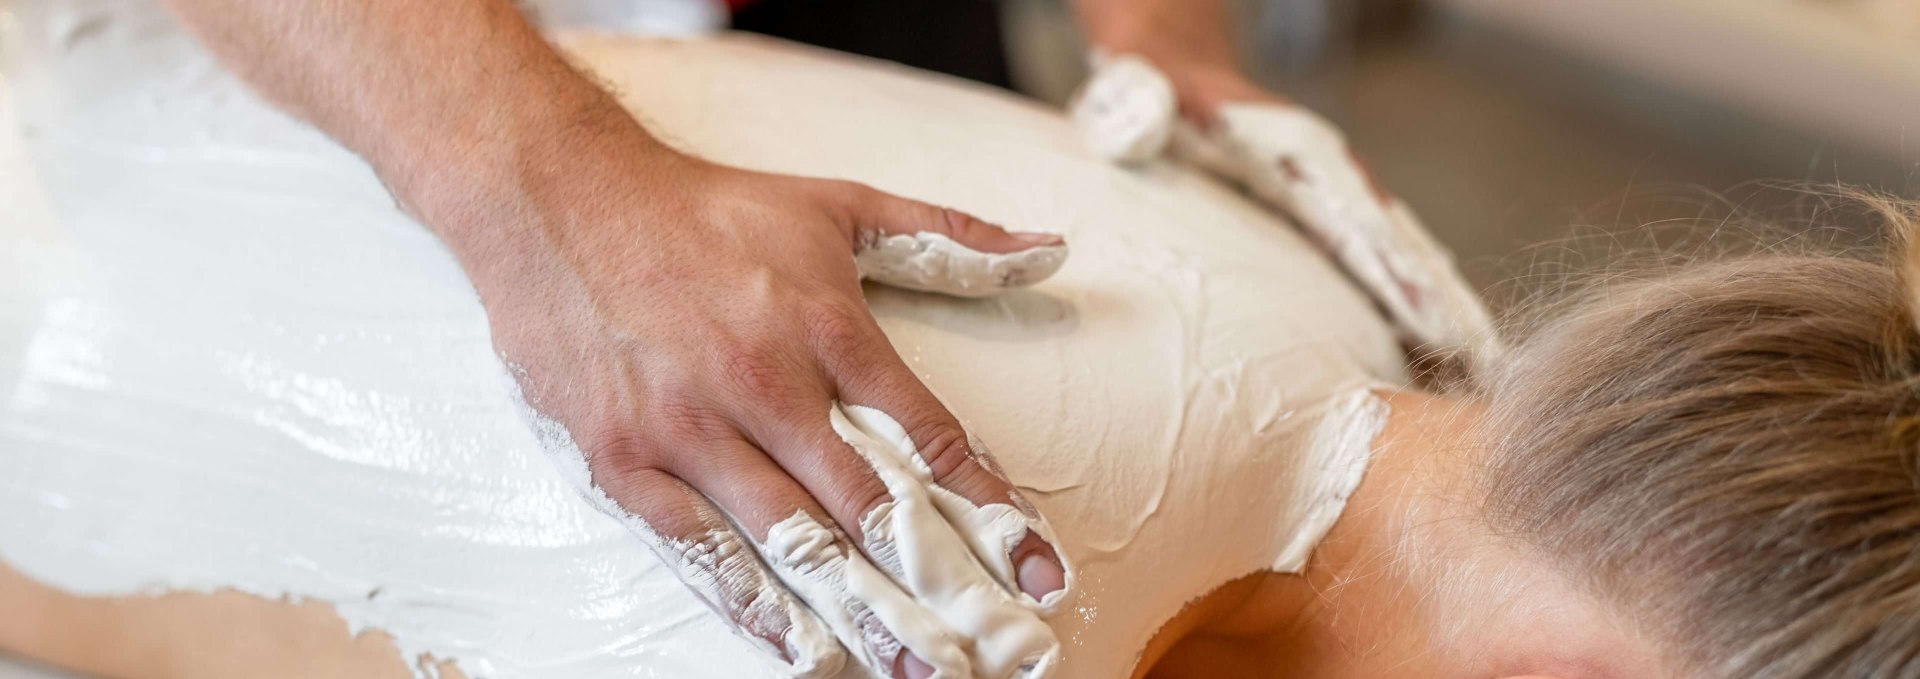 Massagen und Packungen mit Kreide gehören zum vielfältigen Wellness- und Gesundheitsangebot der Insel Rügen., © TMV/Tiemann